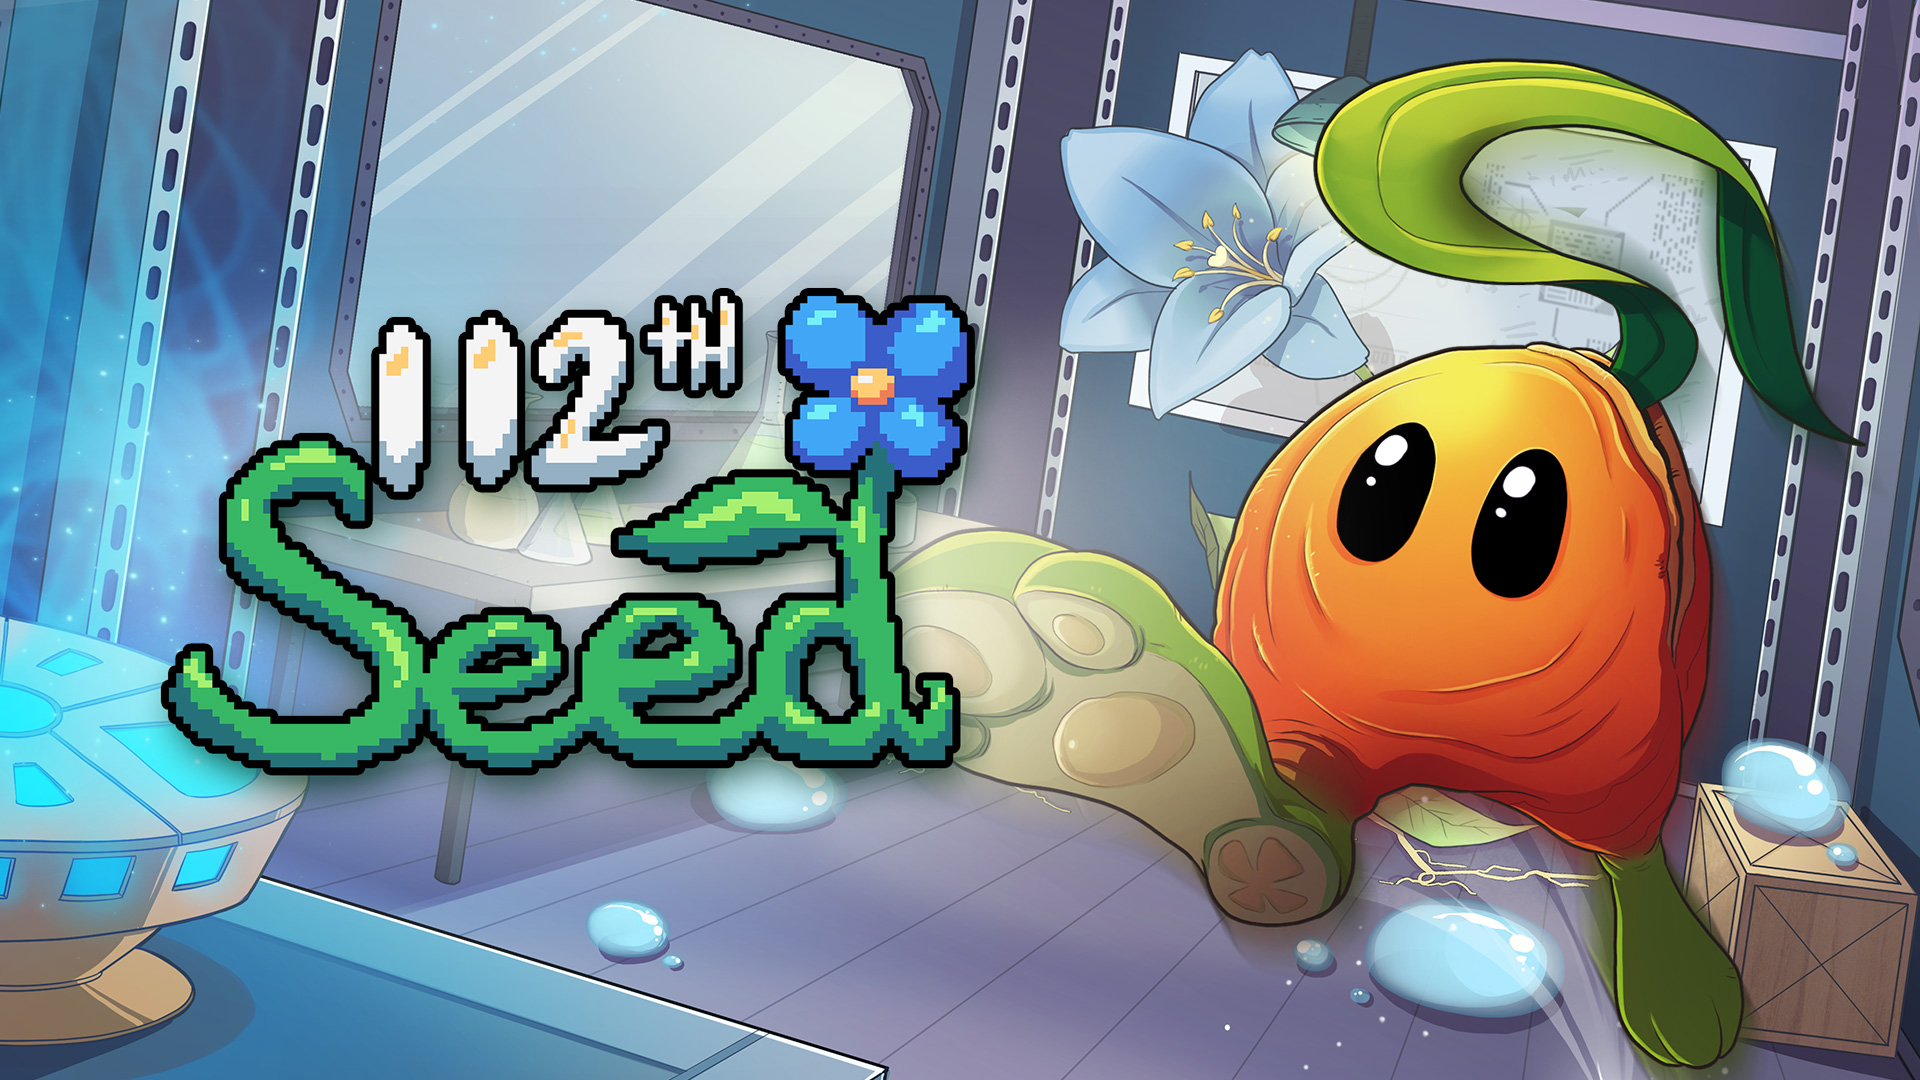 112th Seed | A Semente da salvação